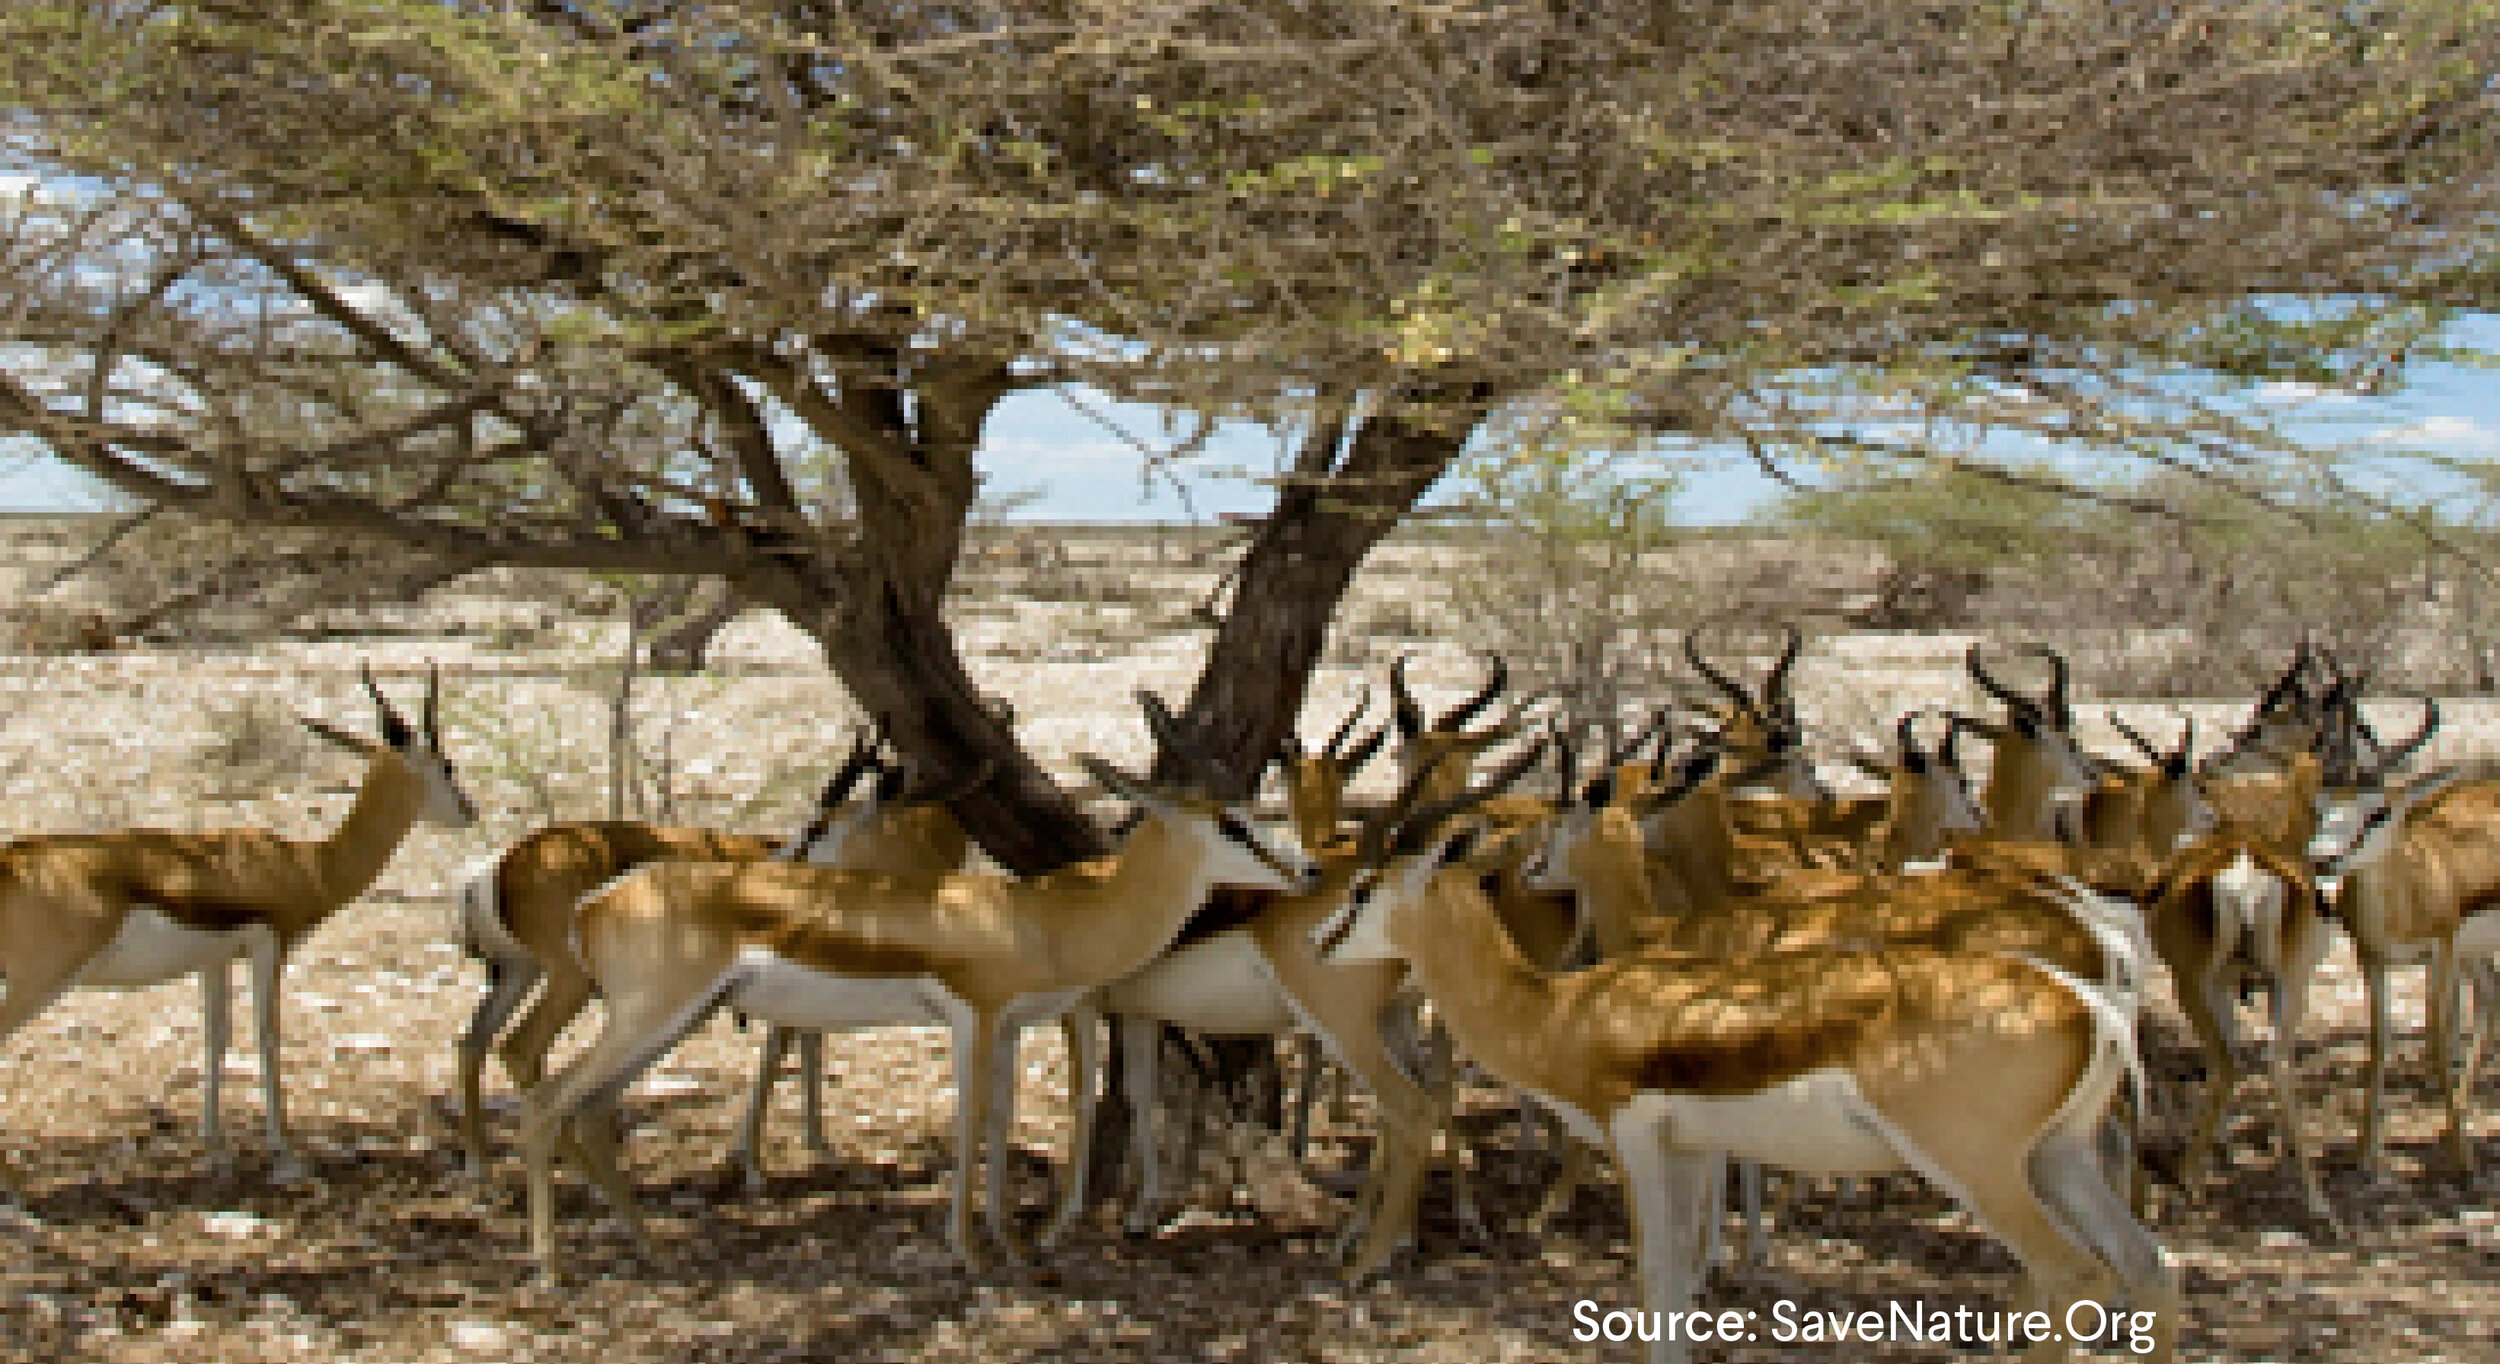 Herd of Gazelles